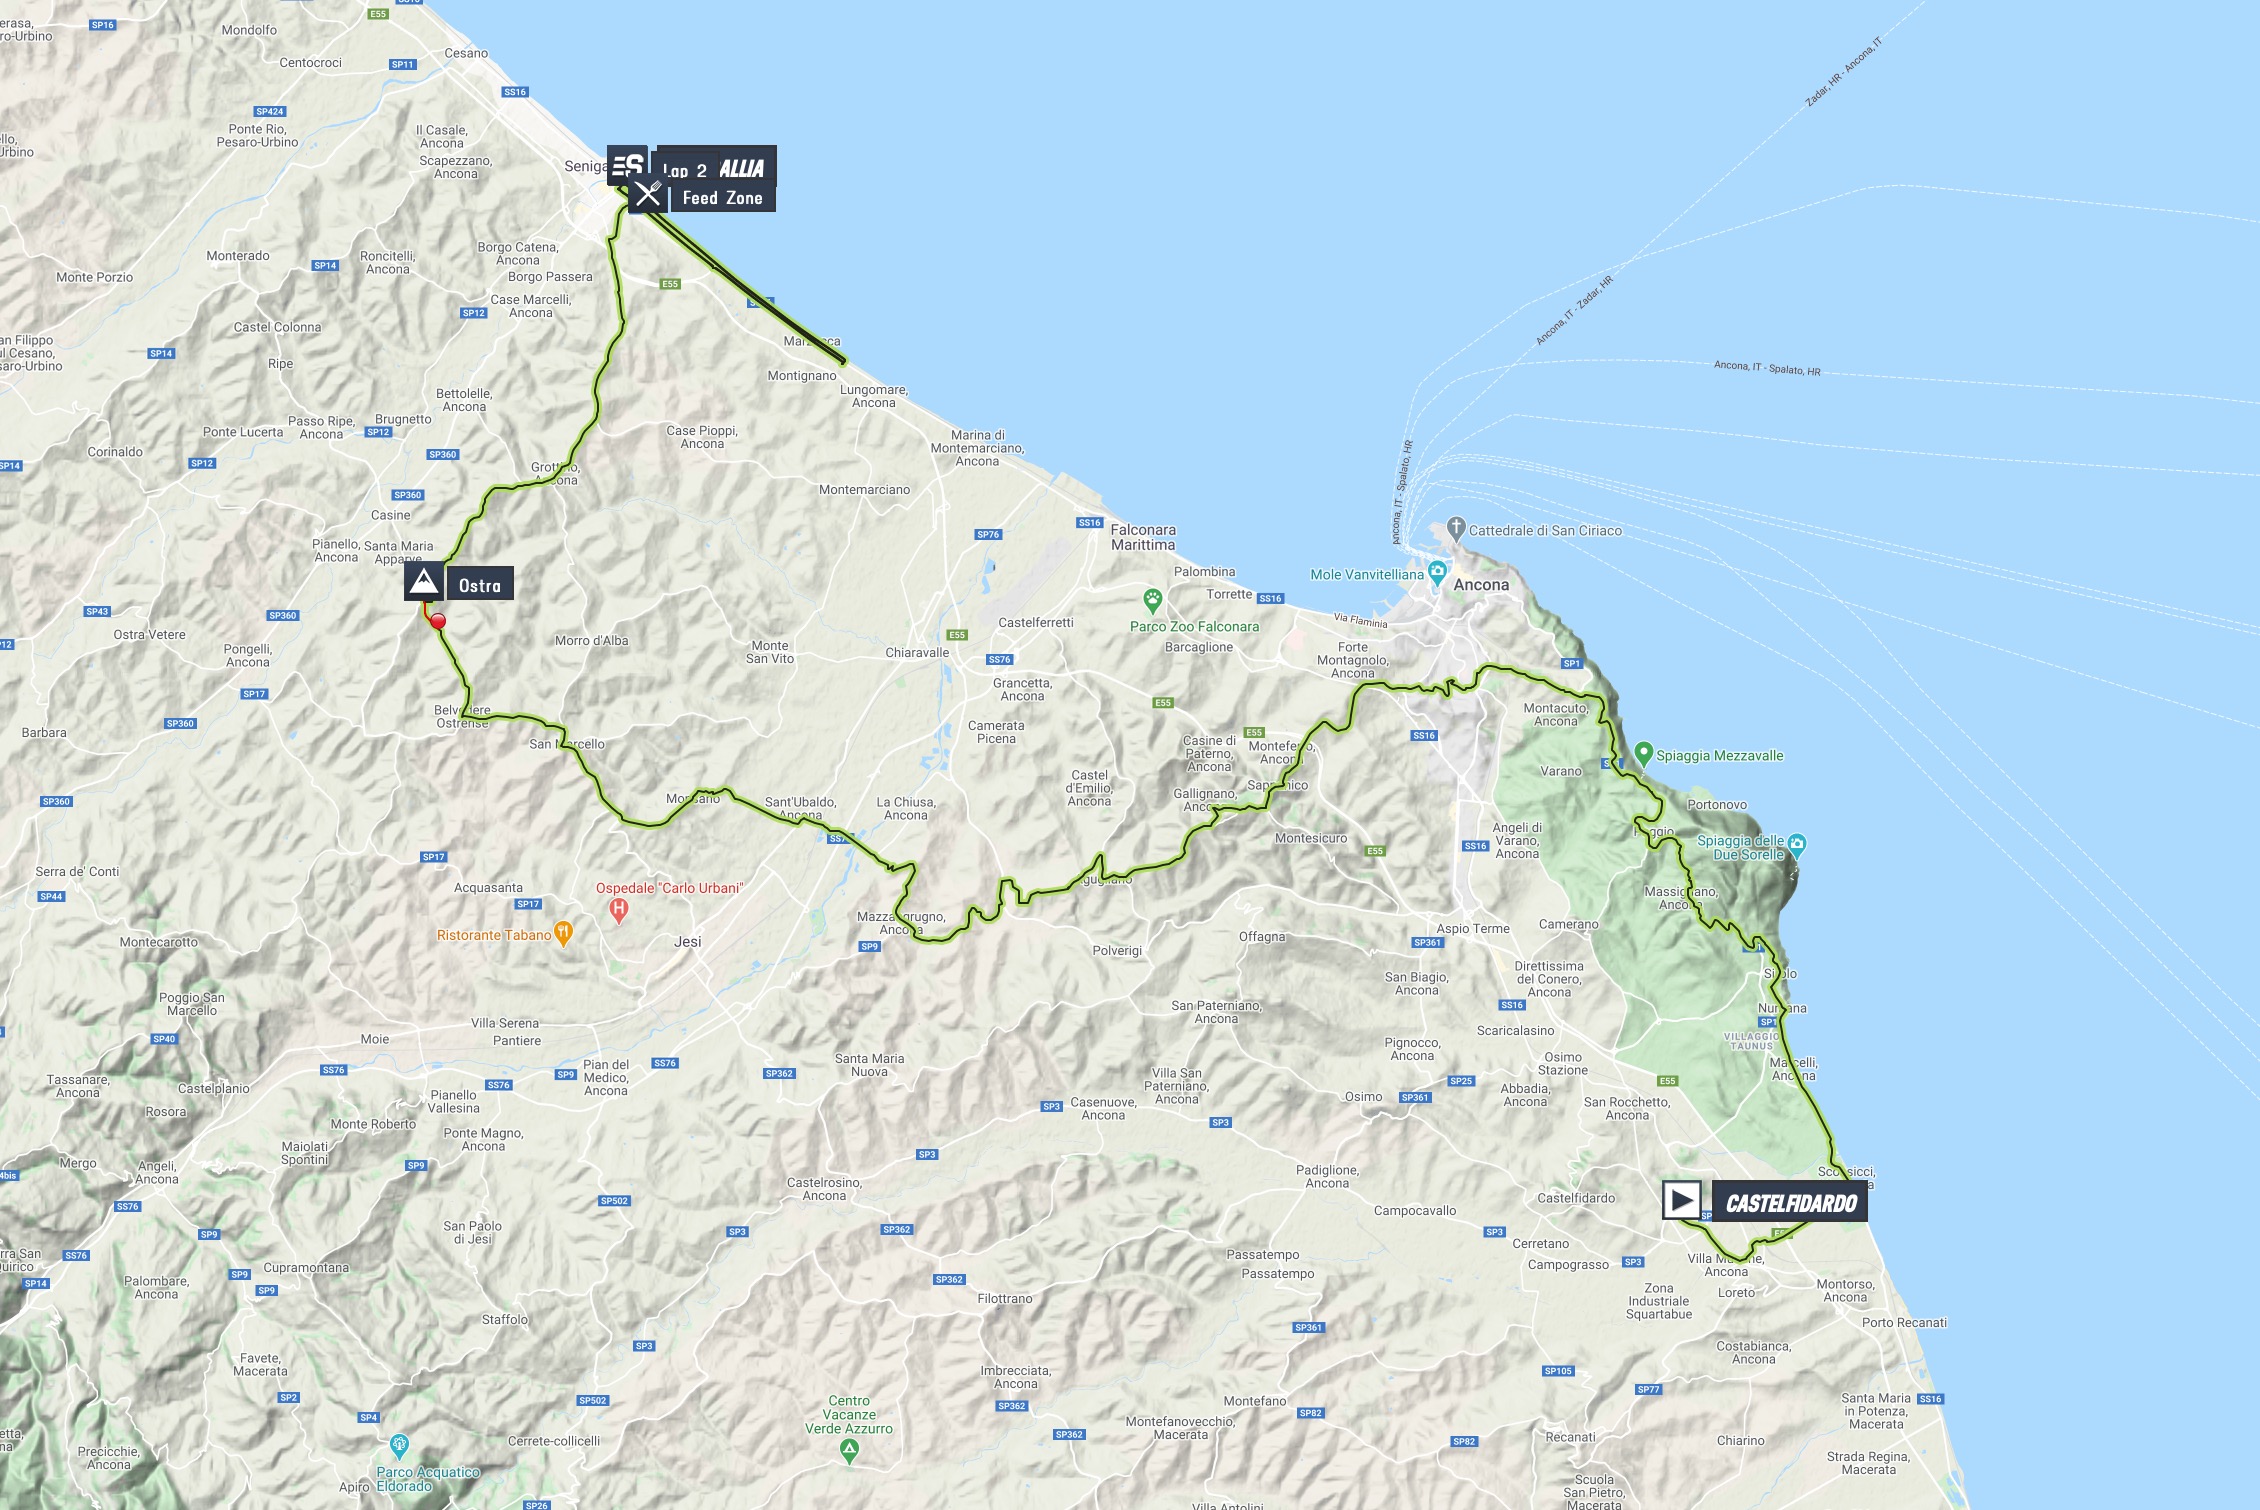 tirreno-adriatico-2020-stage-6-map-n2-b6ebffb10b.jpg